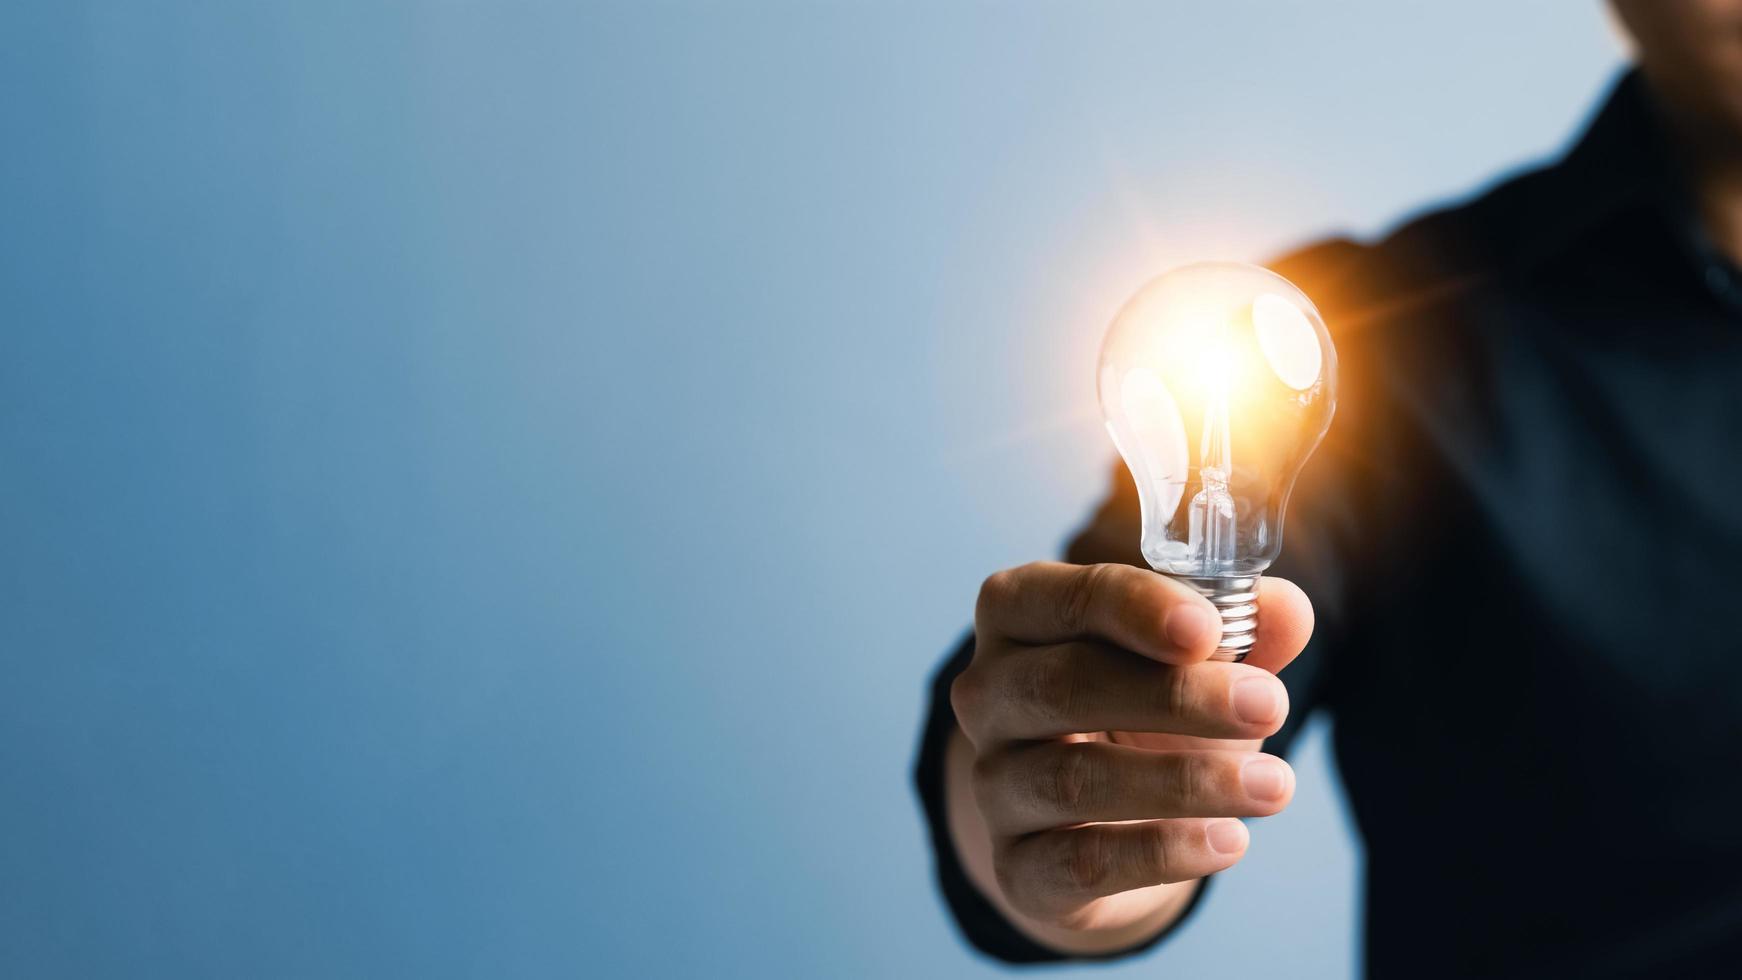 inovação bem sucedida através de ideias e ideias de inspiração. mão humana segurando a lâmpada para iluminar, ideia de criatividade e conceito de inspiração de desenvolvimento de negócios sustentáveis. foto